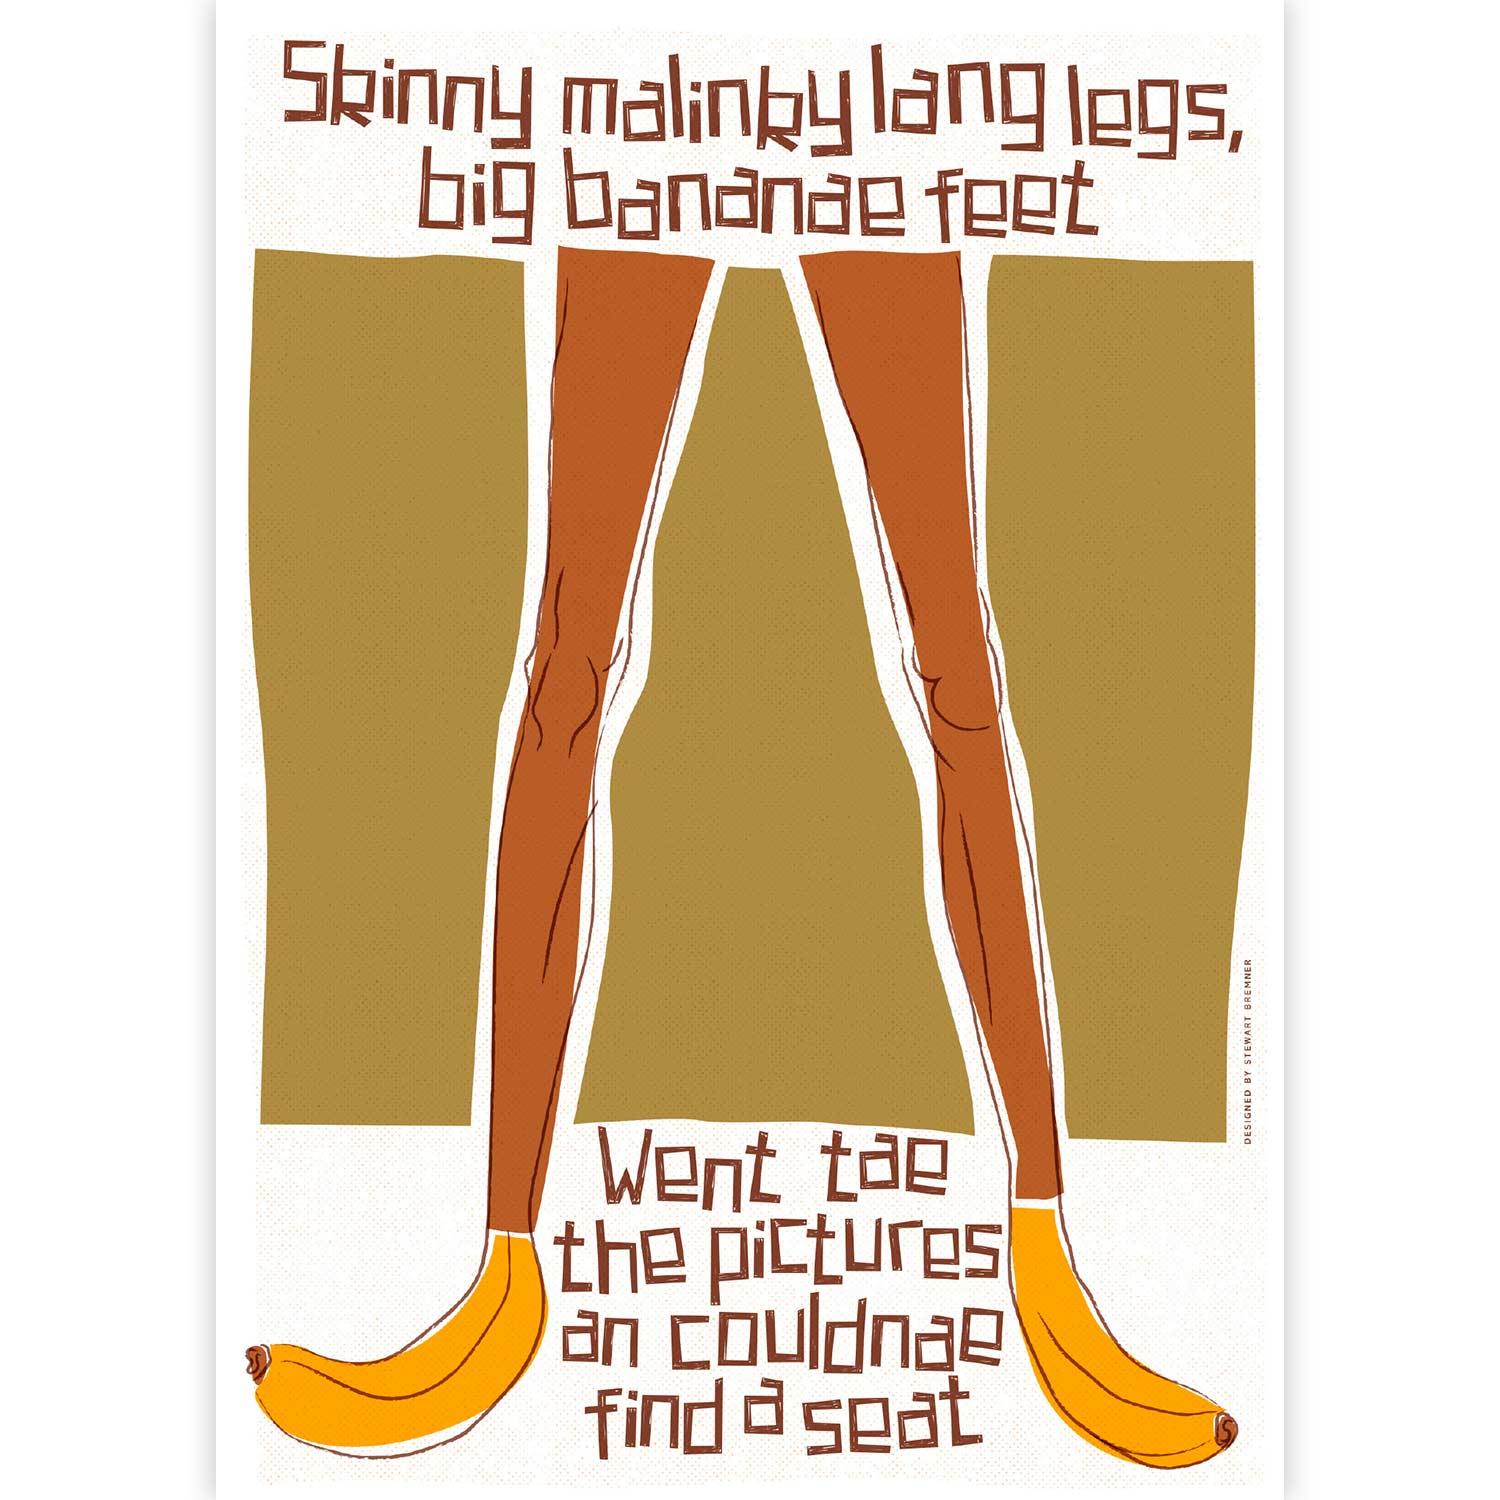 Skinny malinky lang legs, big bananae feet by Stewart Bremner